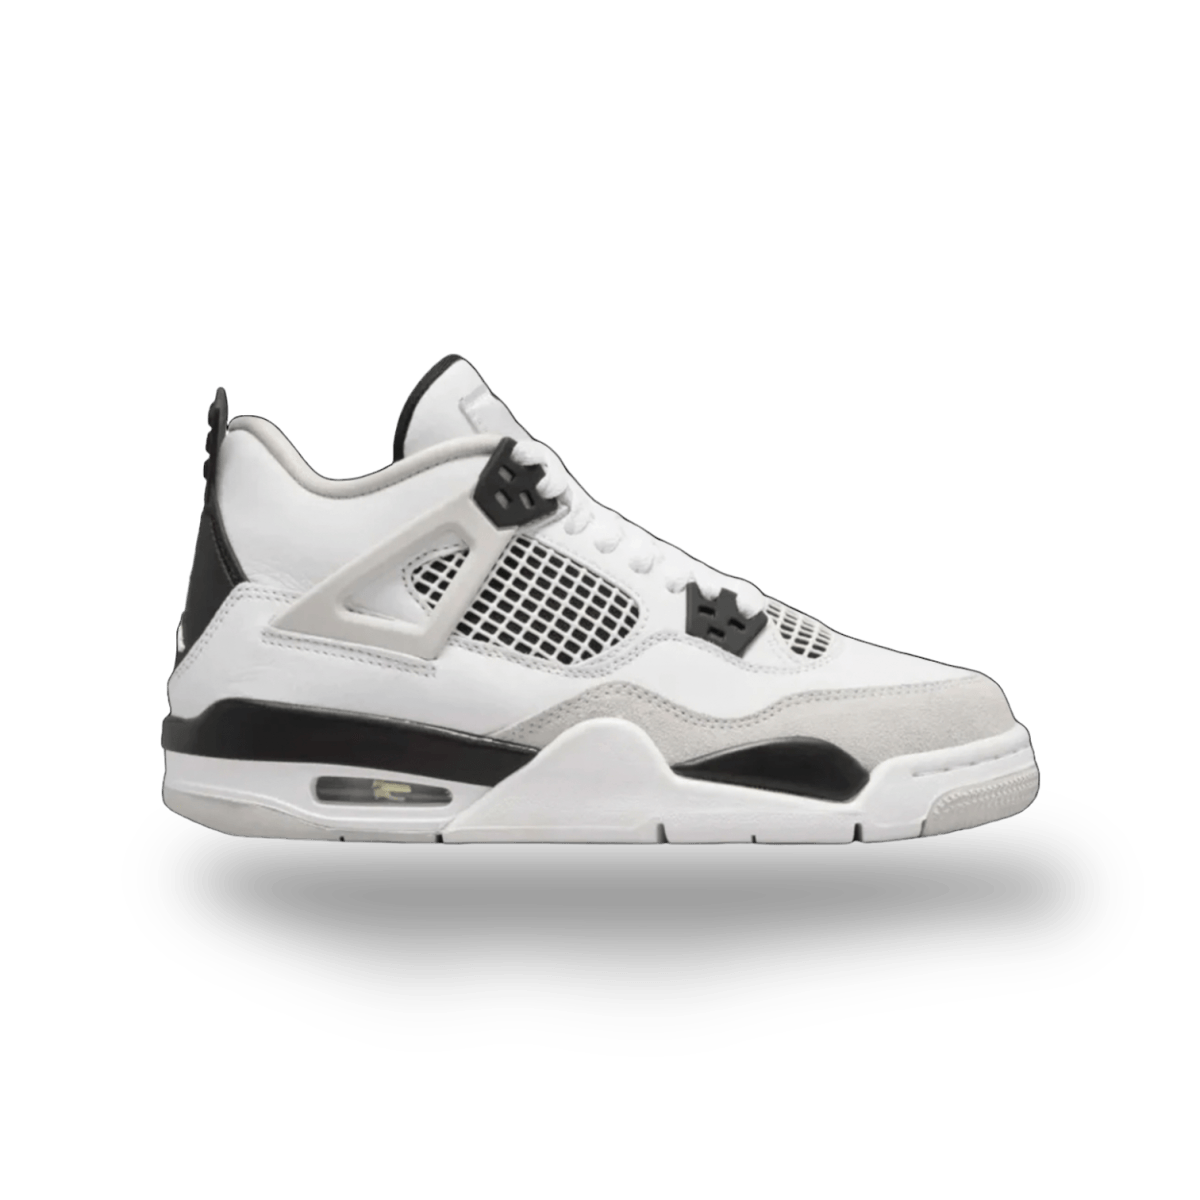 Jordan 4 Retro Military Black - Mid Sneaker - Jawns on Fire Sneakers & Streetwear